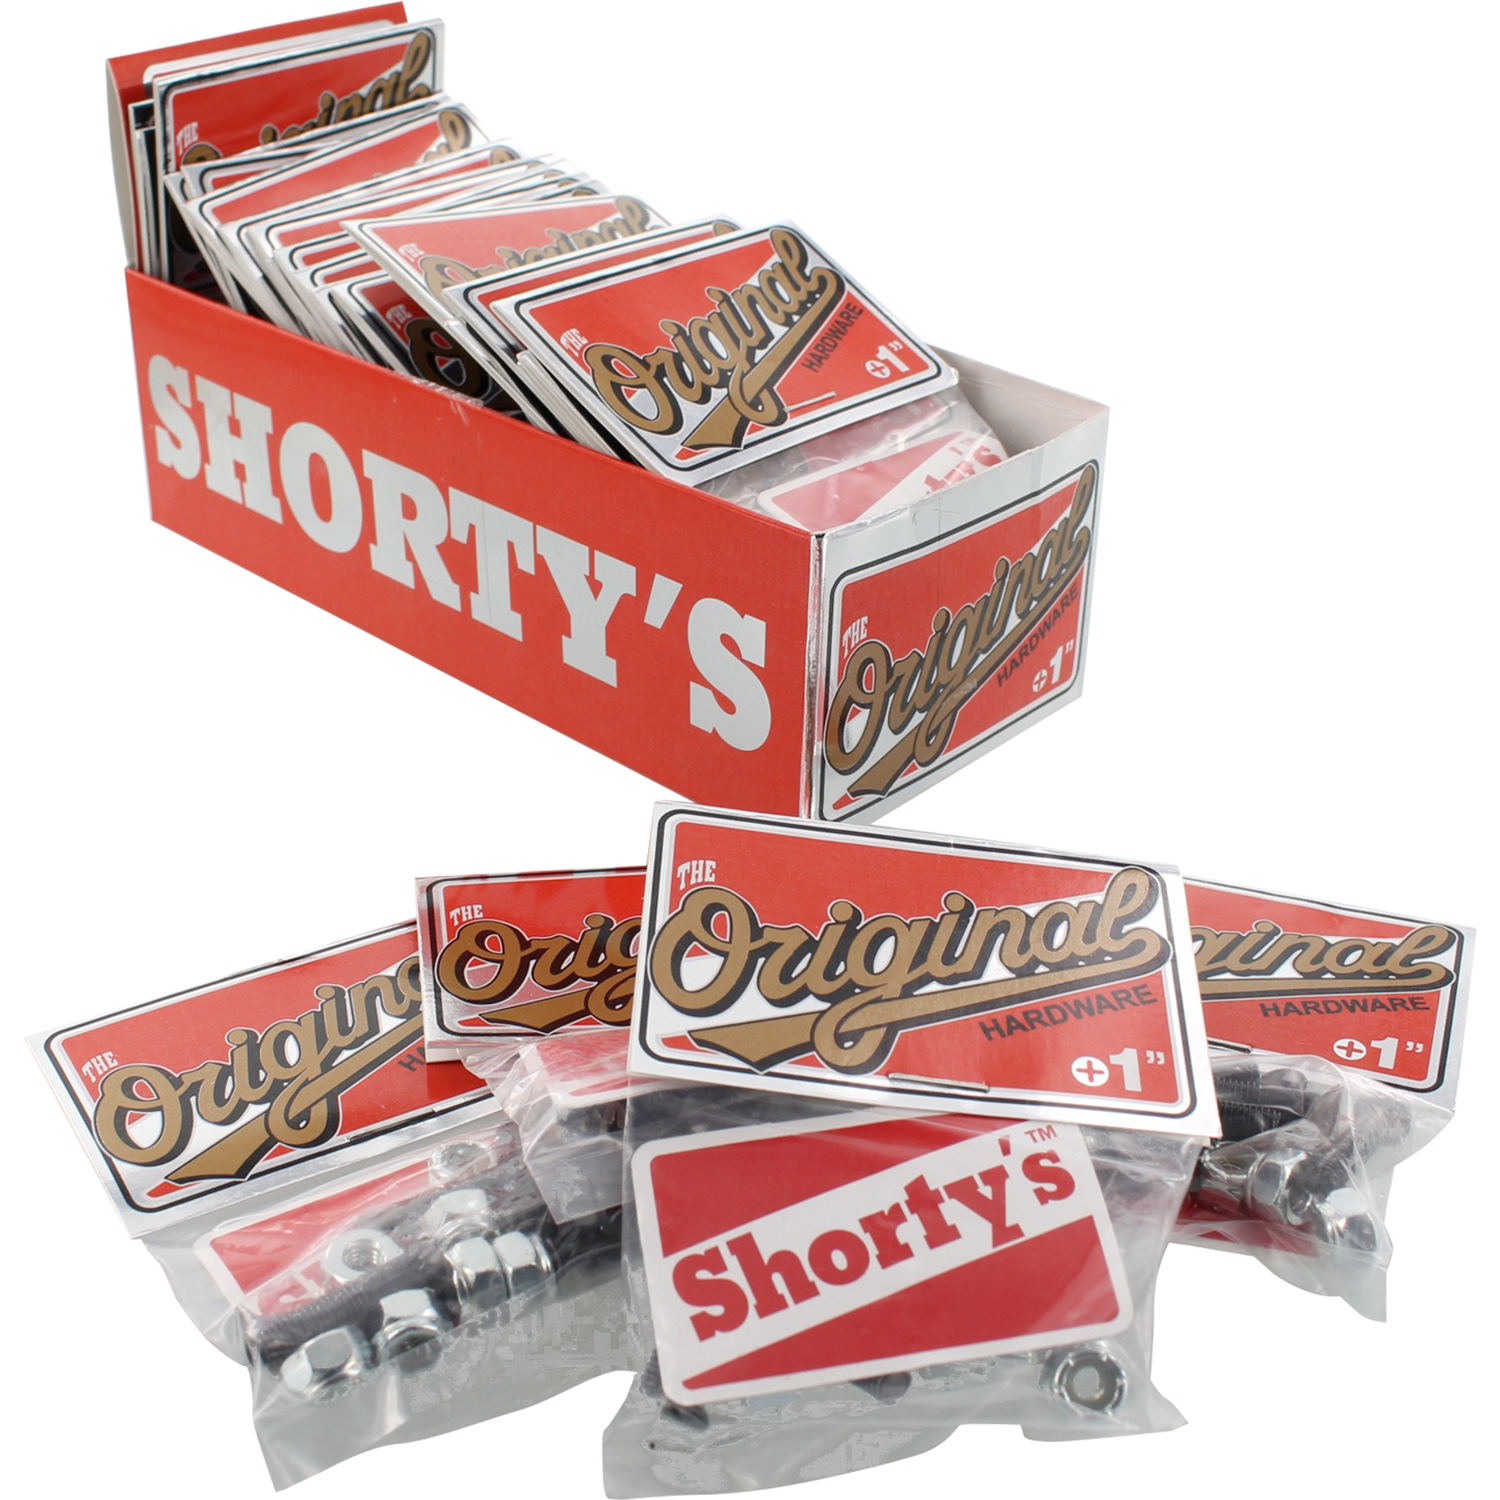 Shorty's 1” Skate Hardware